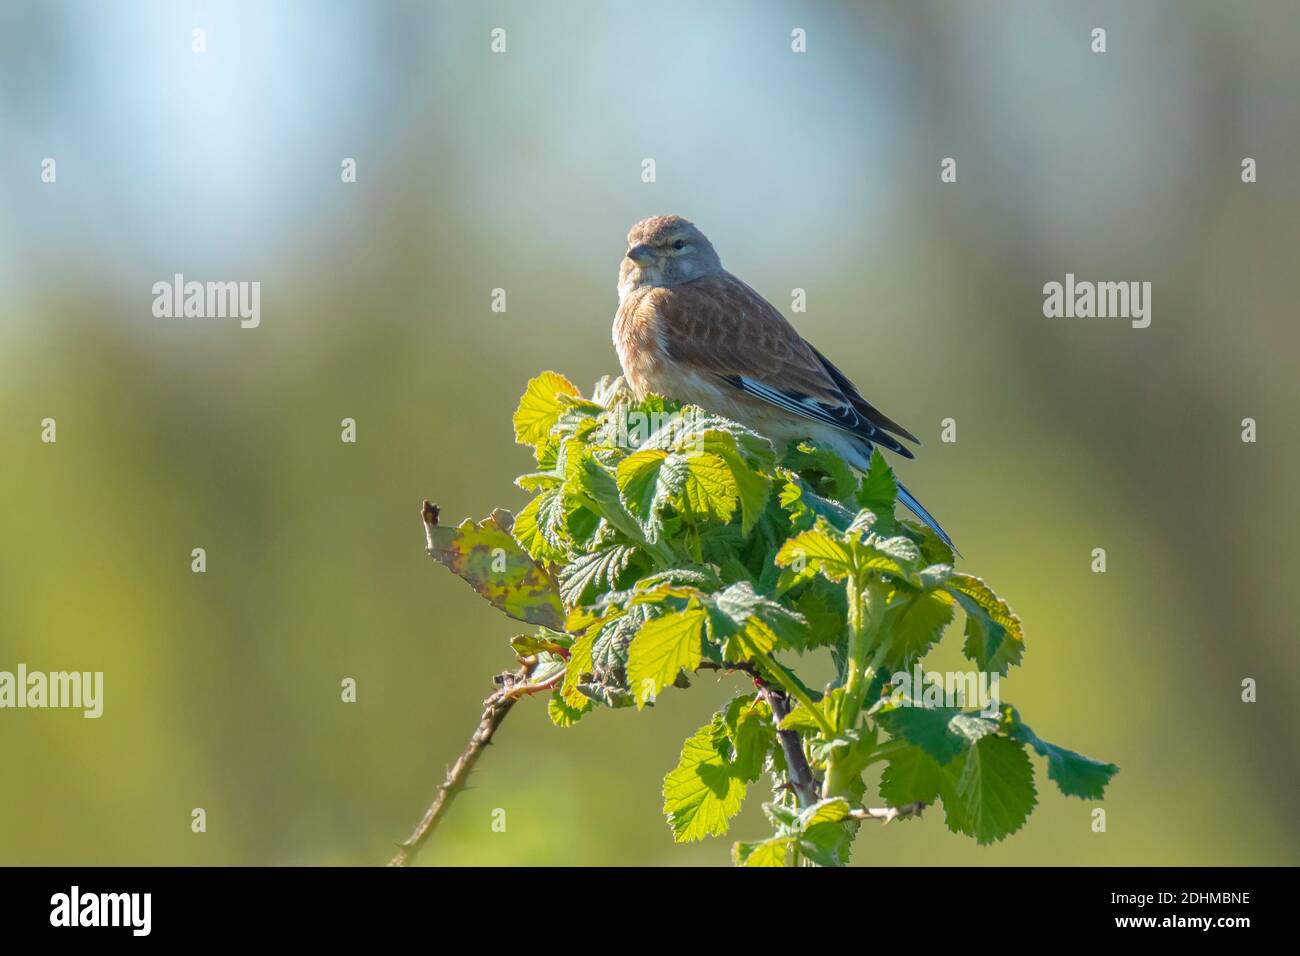 Nahaufnahme Porträt eines Linnet Vogel Weibchen, Carduelis cannabina, Anzeige und Suche nach einem Partner während der Frühjahrssaison. Singen in den frühen Morgenstunden su Stockfoto